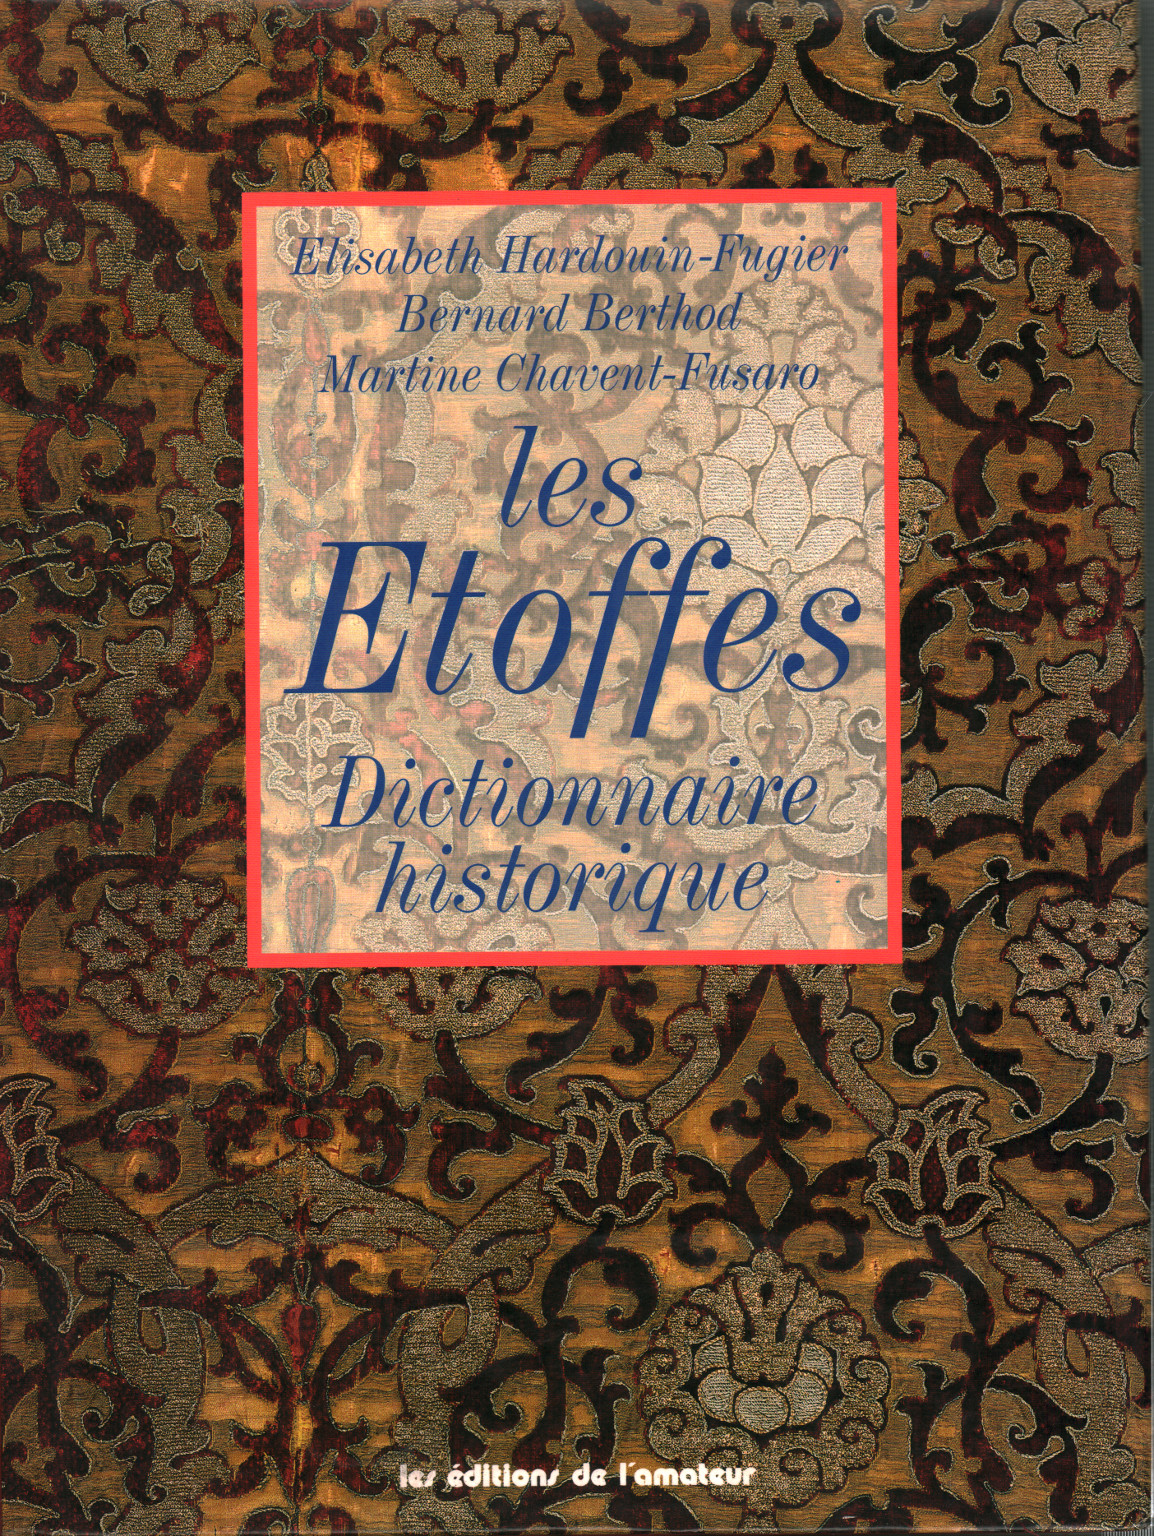 Les Etoffes. Dictionnaire historique, s.a.